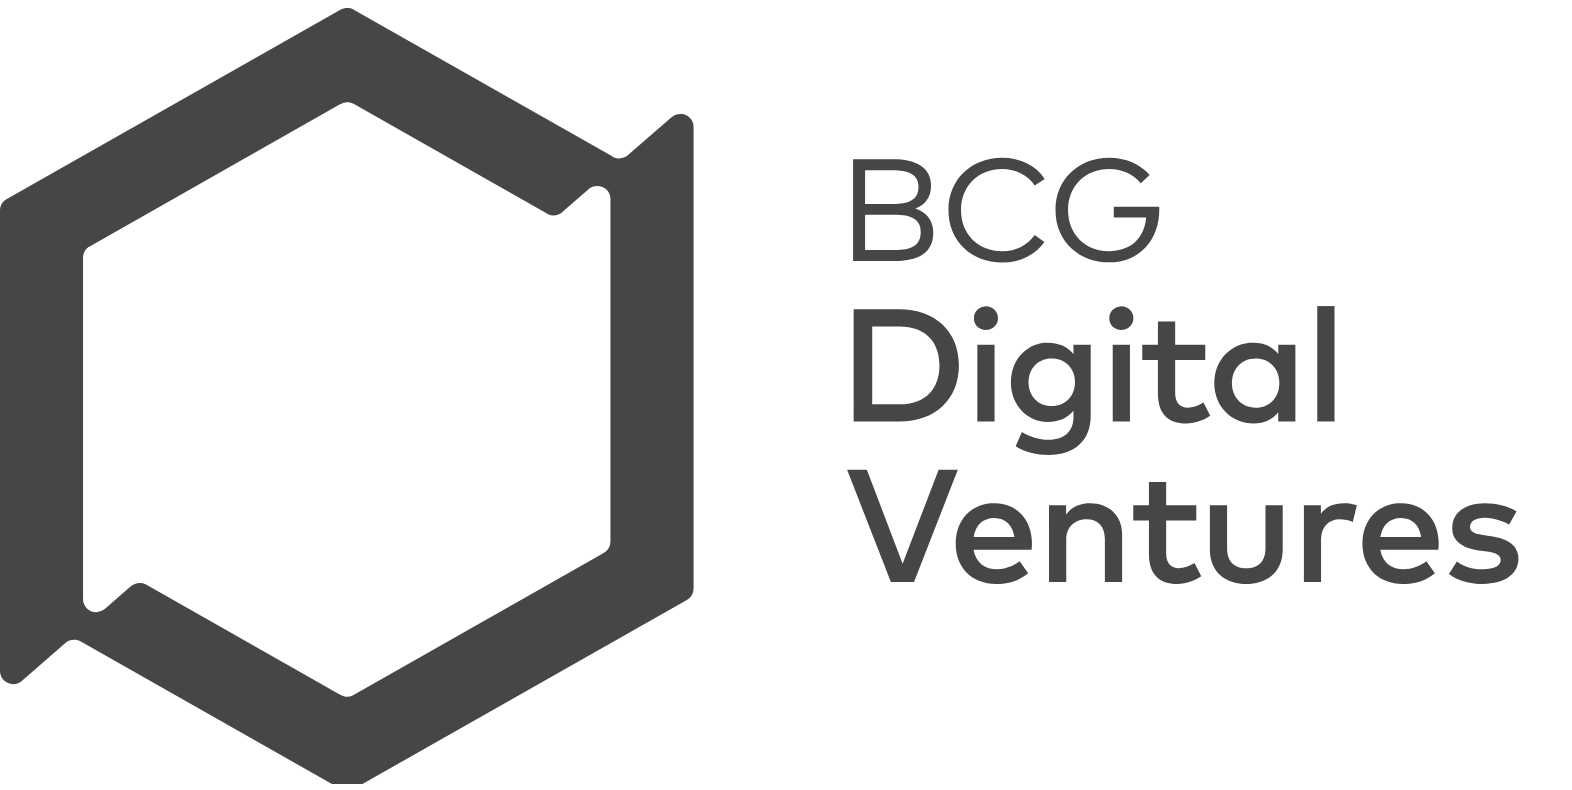 BCG Digital Ventures